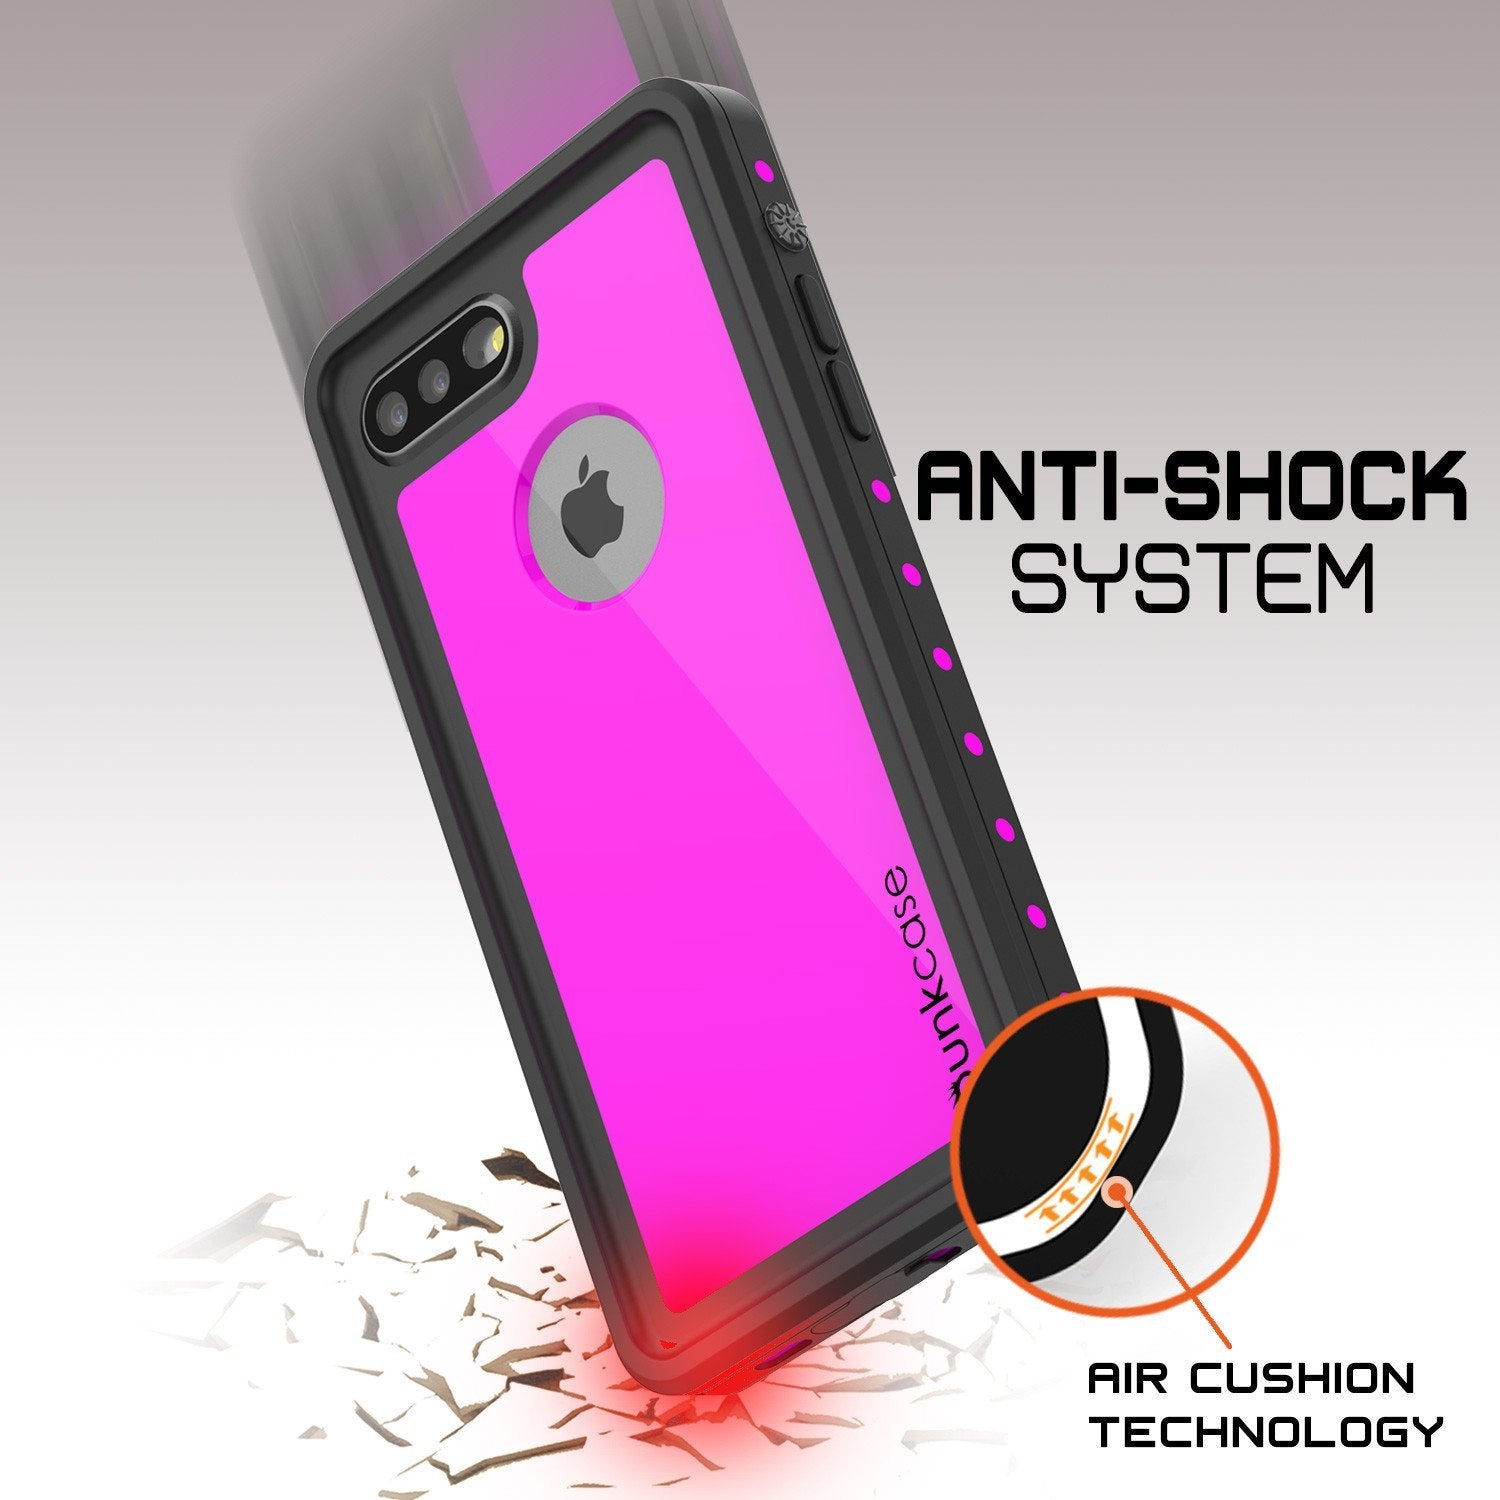 iPhone 8+ Plus Waterproof IP68 Case, Punkcase [Pink] [StudStar Series] [Slim Fit] [Dirtproof] - PunkCase NZ